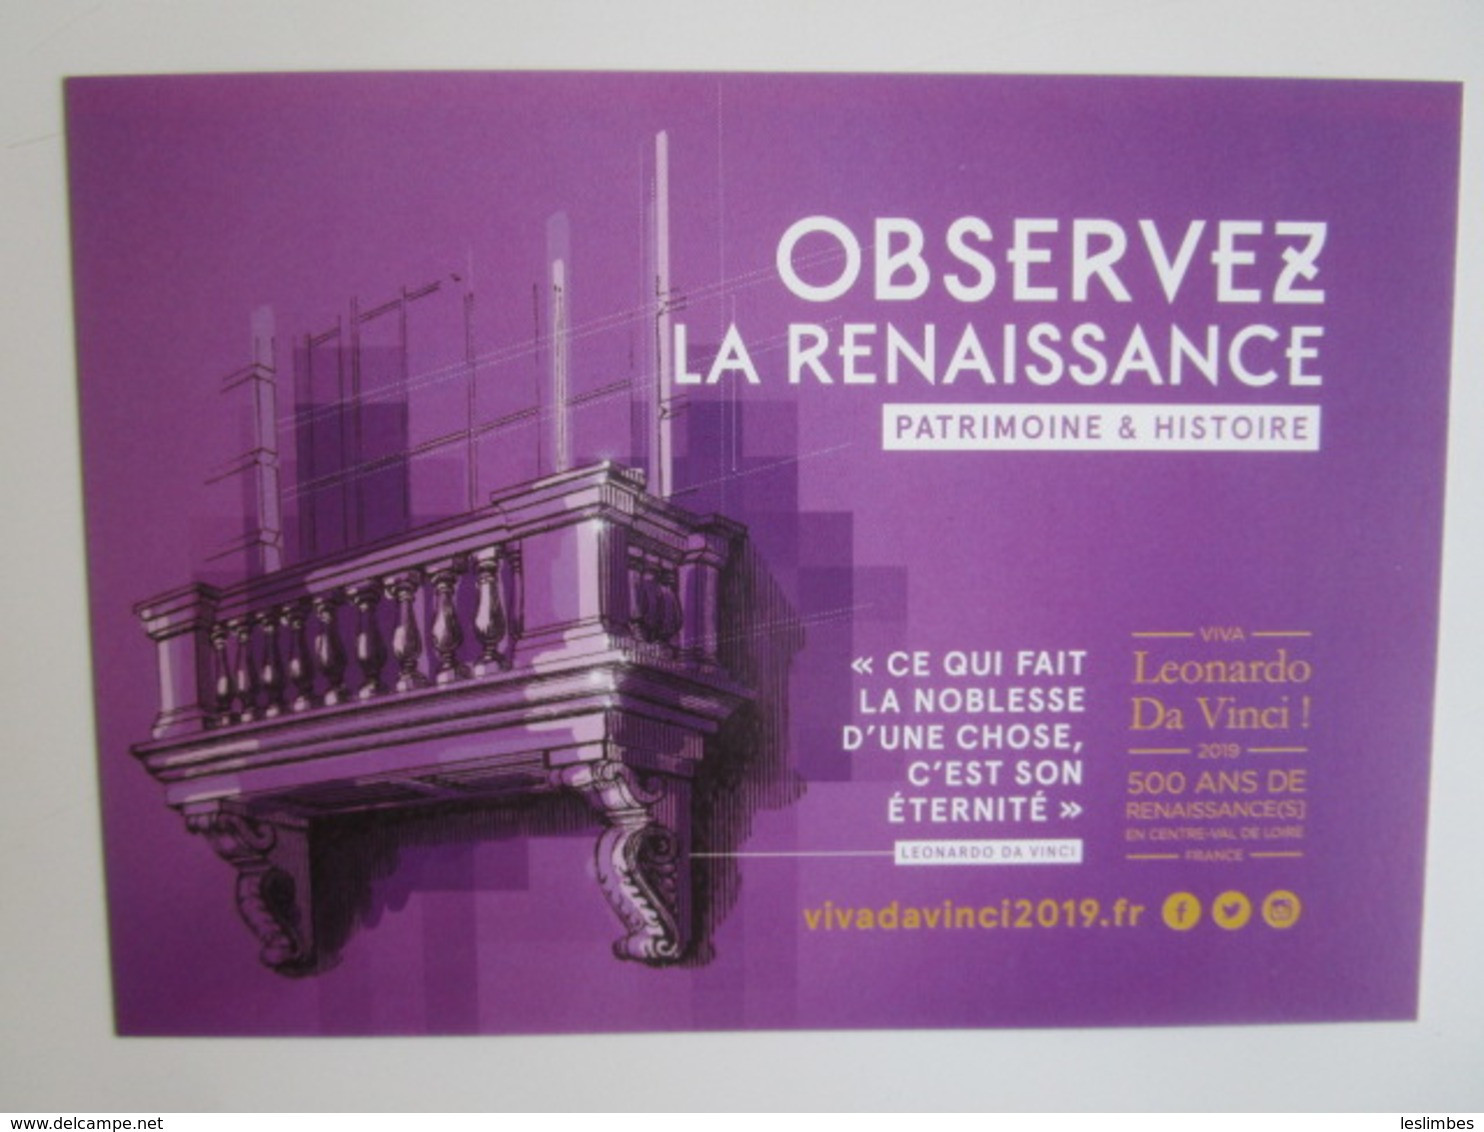 Viva Leonardo Da Vinci 2019: 500 Ans De Renaissance(s) En Centre - Val De Loire France. Observez... - Ausstellungen